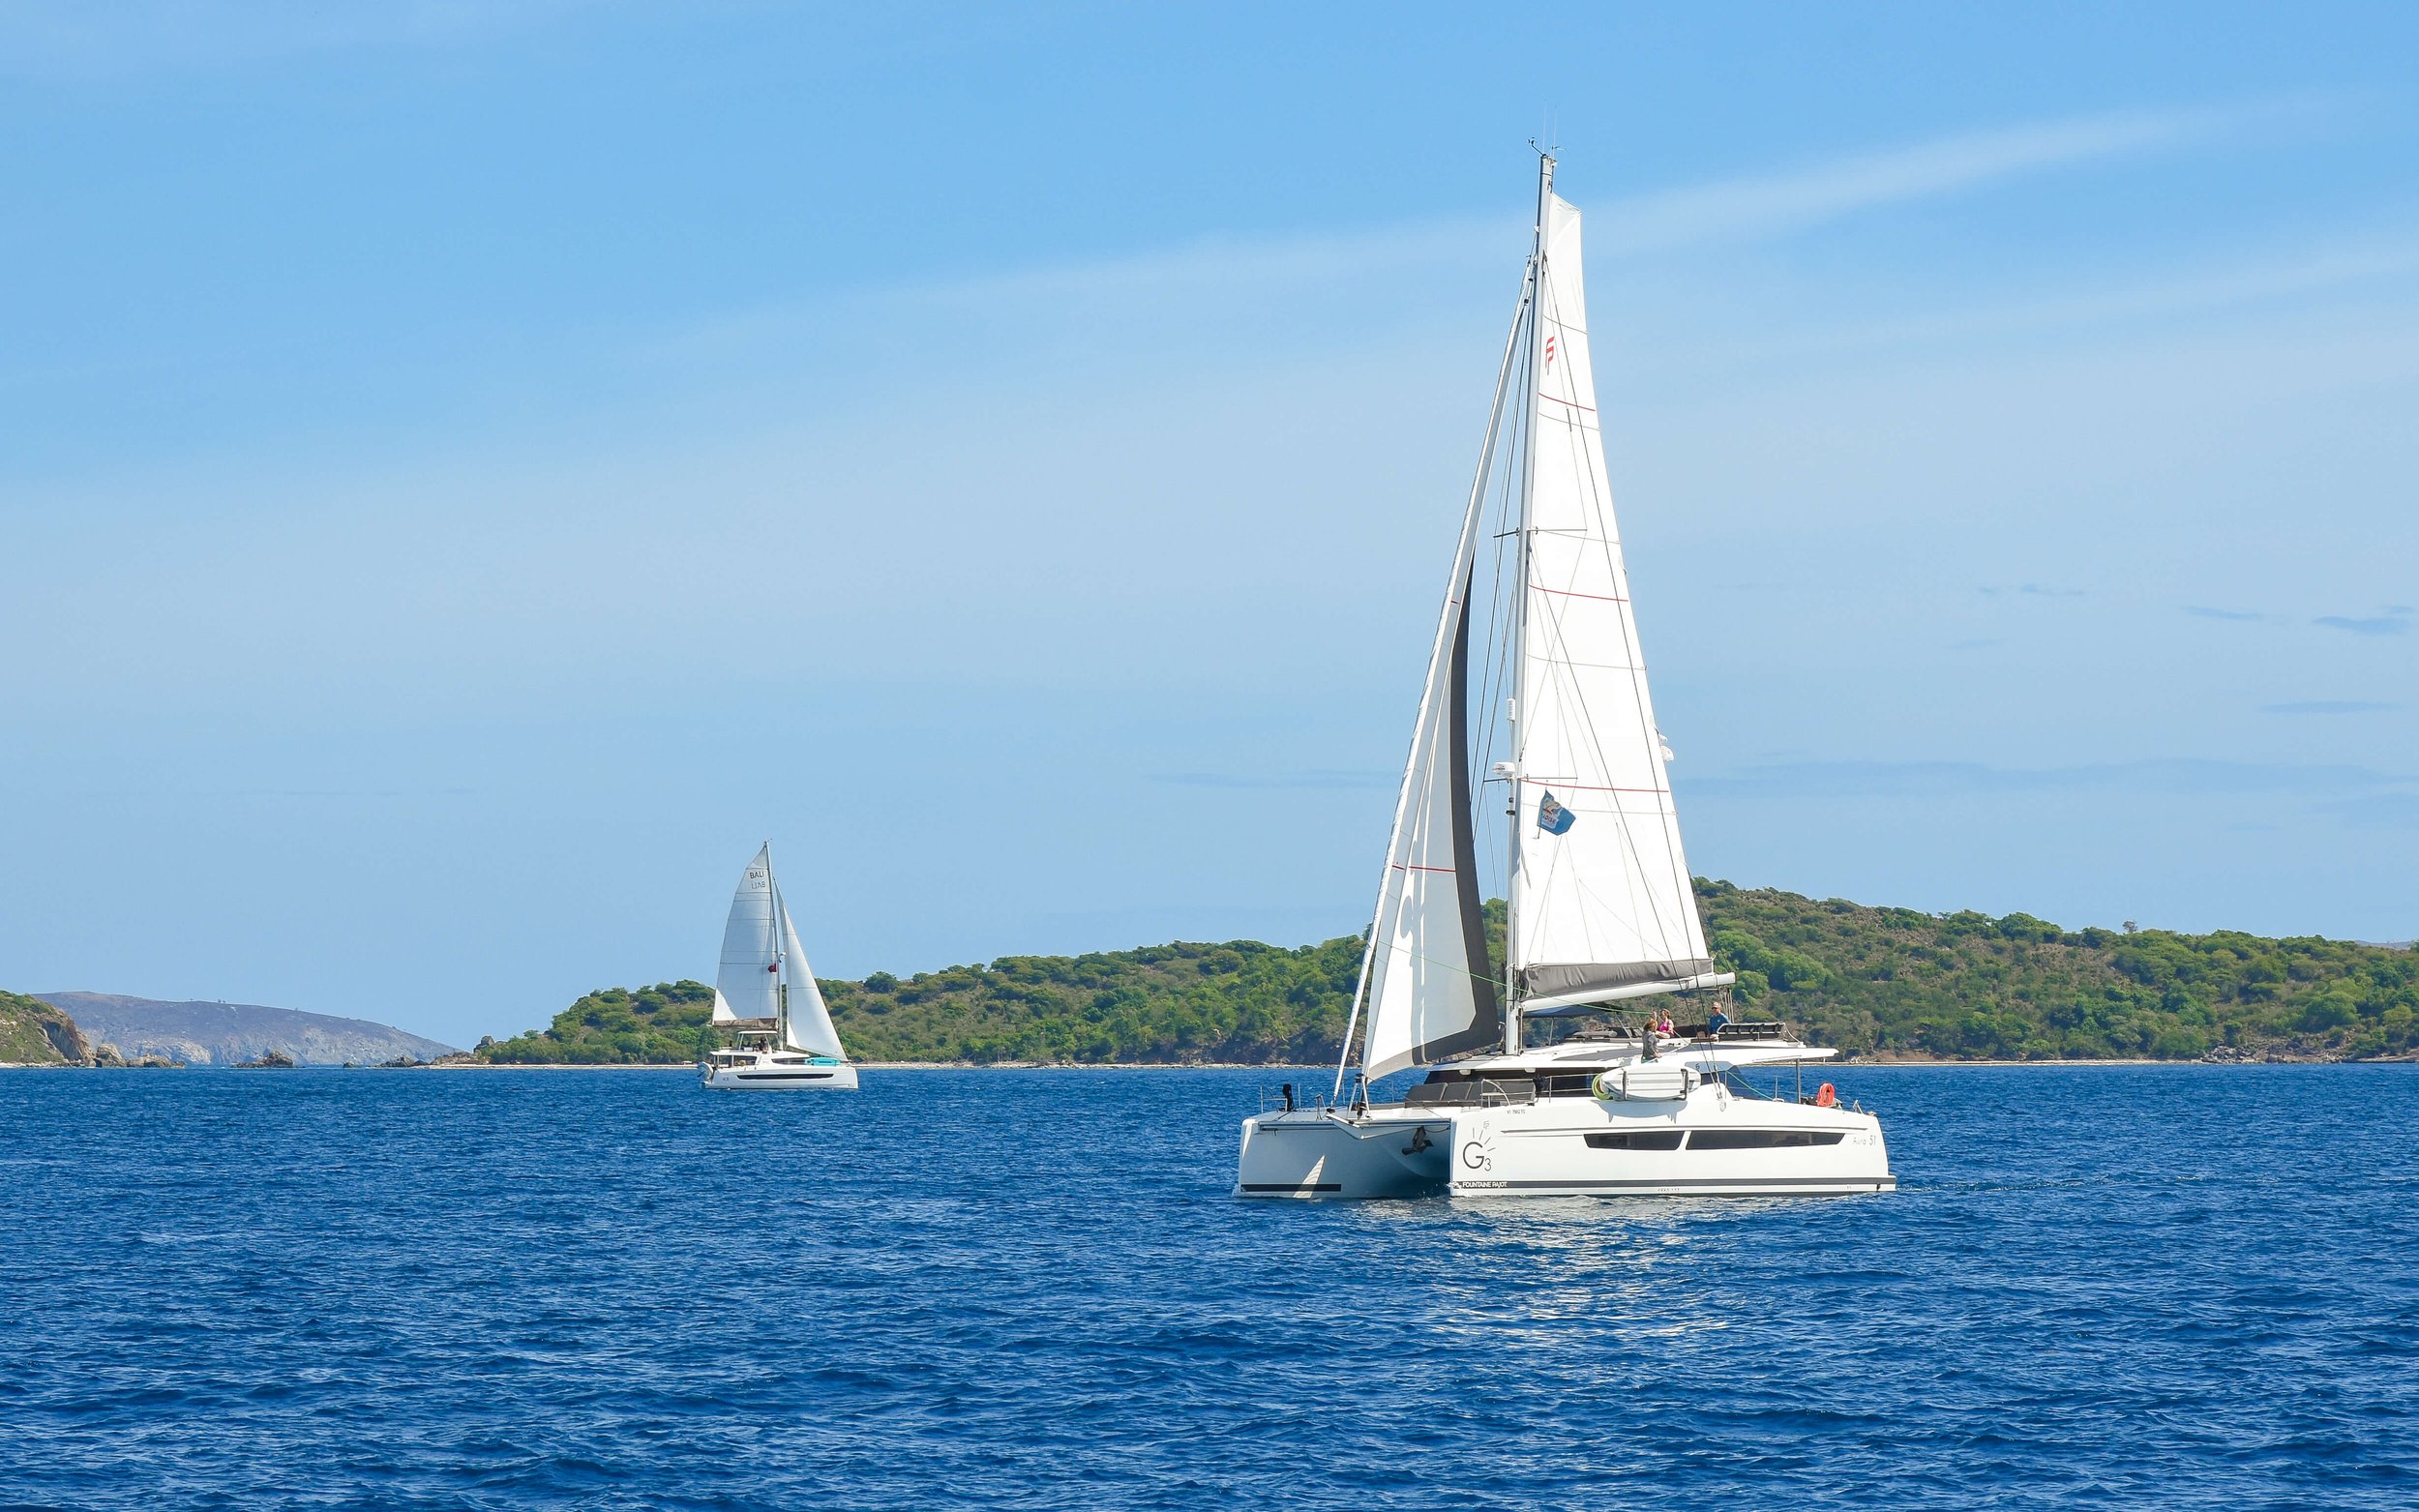 rent a catamaran in the virgin islands